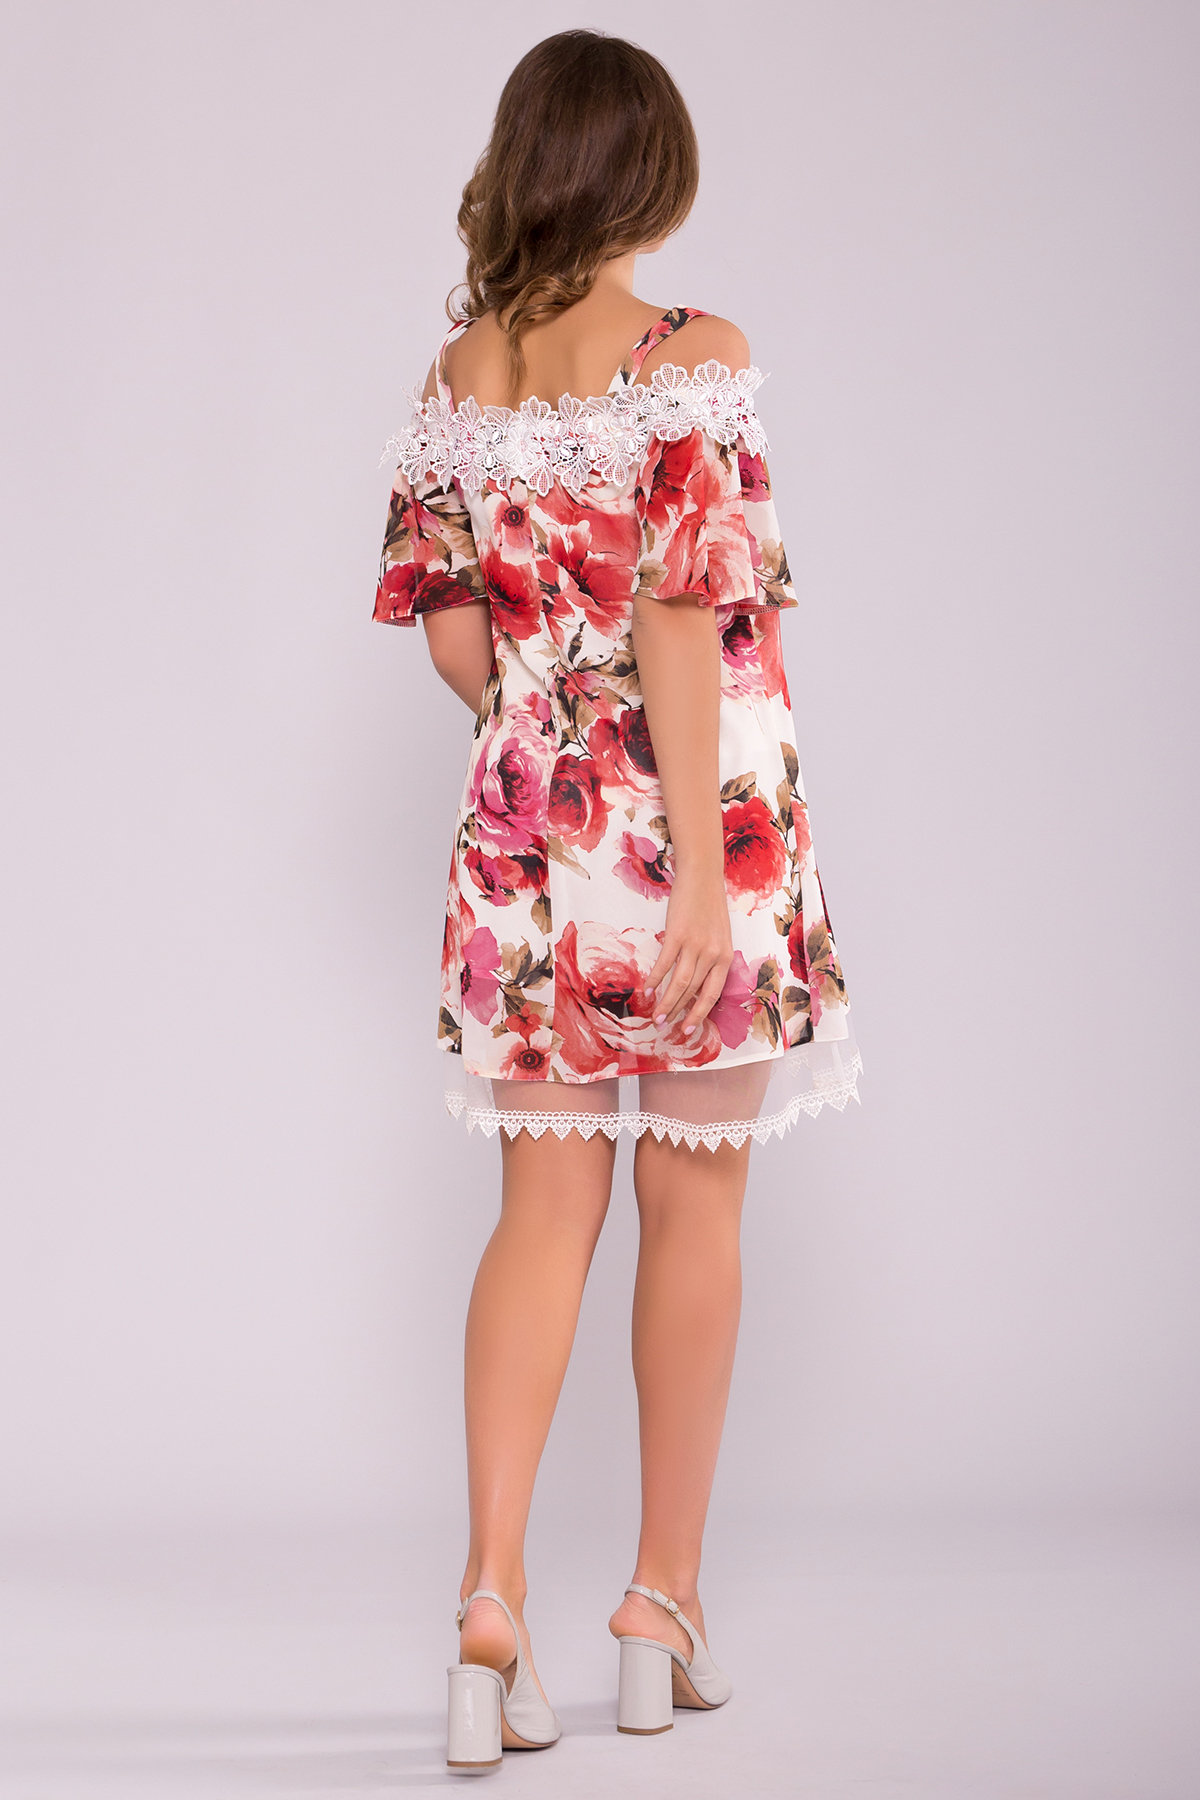 Платье Линда 6936 АРТ. 42295 Цвет: Розы молоко/коралл - фото 2, интернет магазин tm-modus.ru